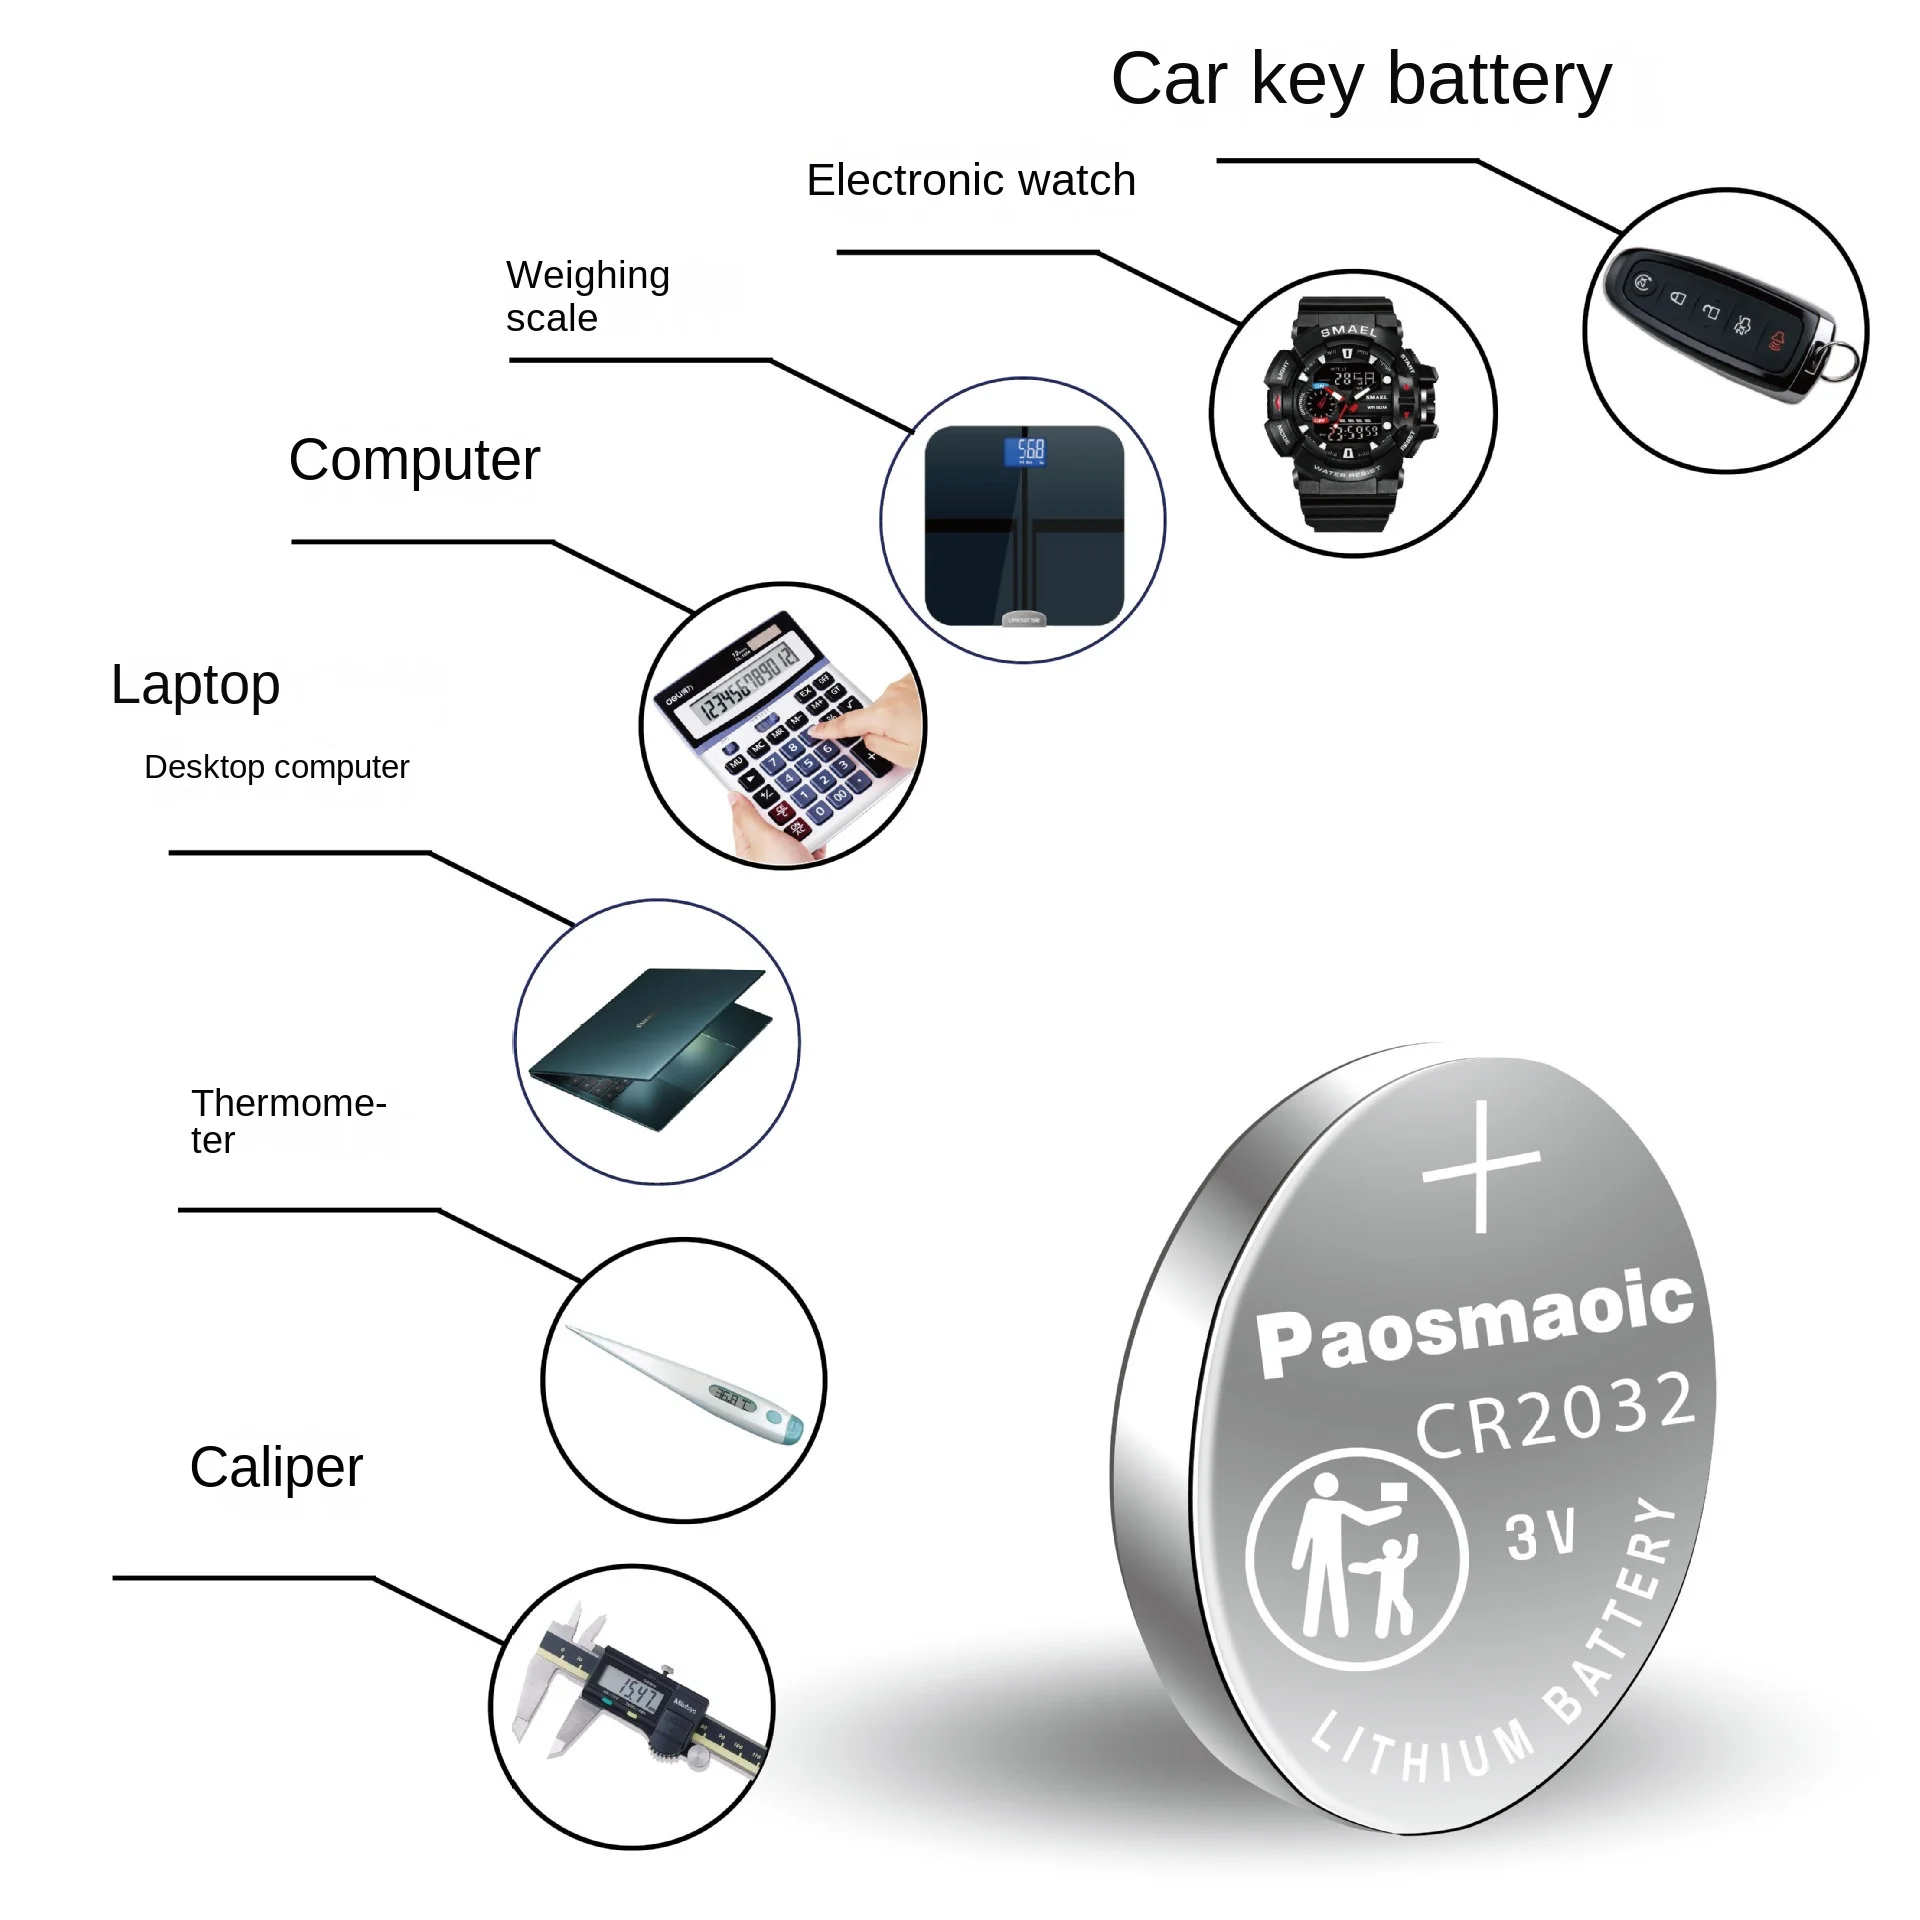 Новые Оригинальные Батарейки CR1616 с Монетными Ячейками Большой Емкости 5/10/30шт для Часов CR 1616 Battery Car Remote Control cr2032 Coin Cell Изображение 3